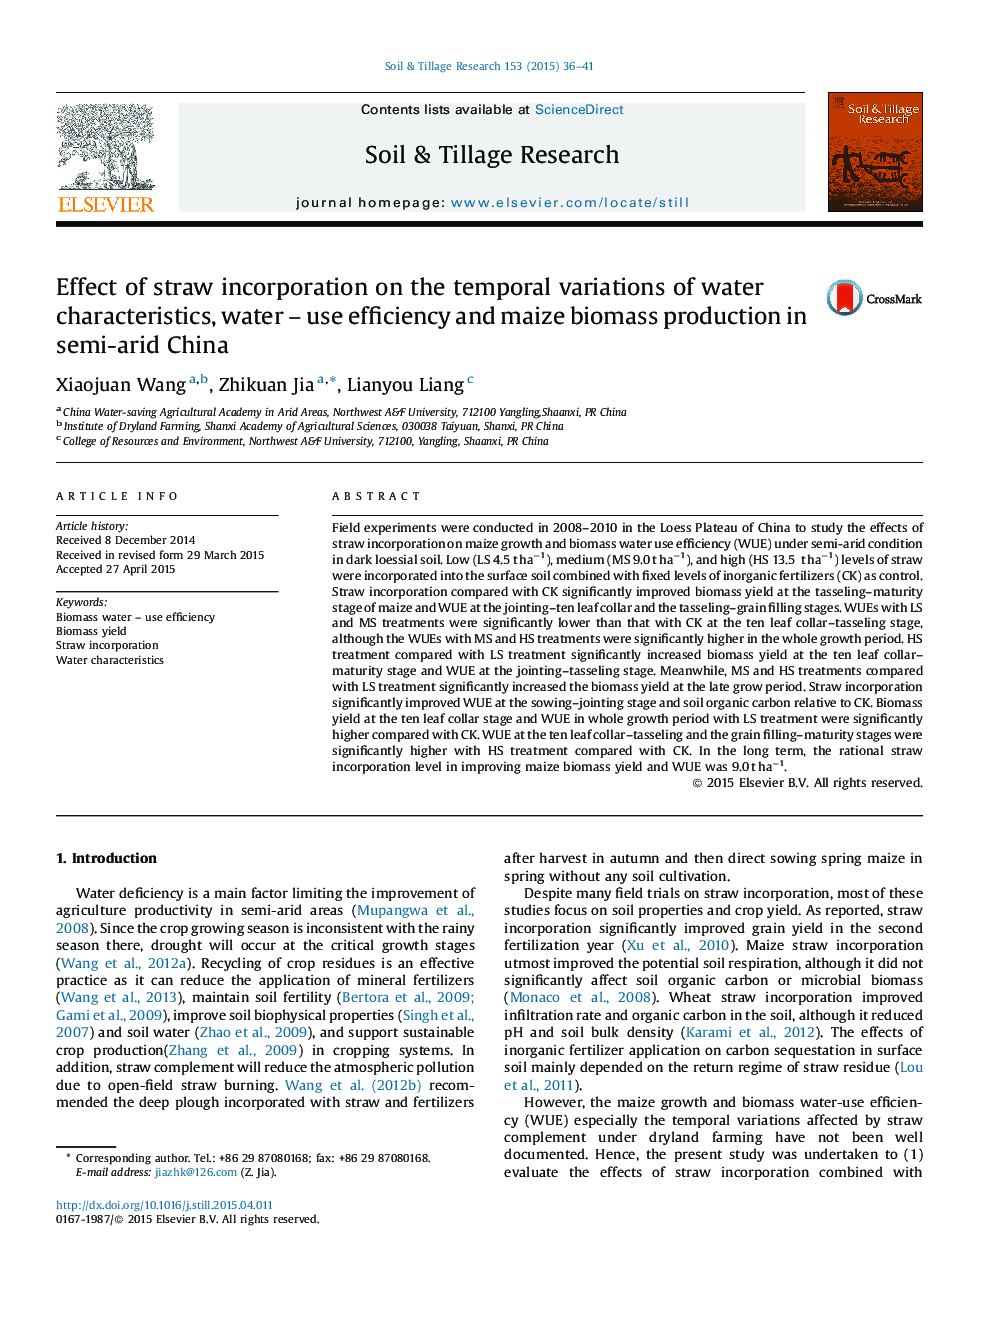 تأثیر ترکیب کاه در تغییرات زمانی آب، ویژگی آب استفاده از بهره وری و تولید زیست توده ذرت در نیمه خشک چین 